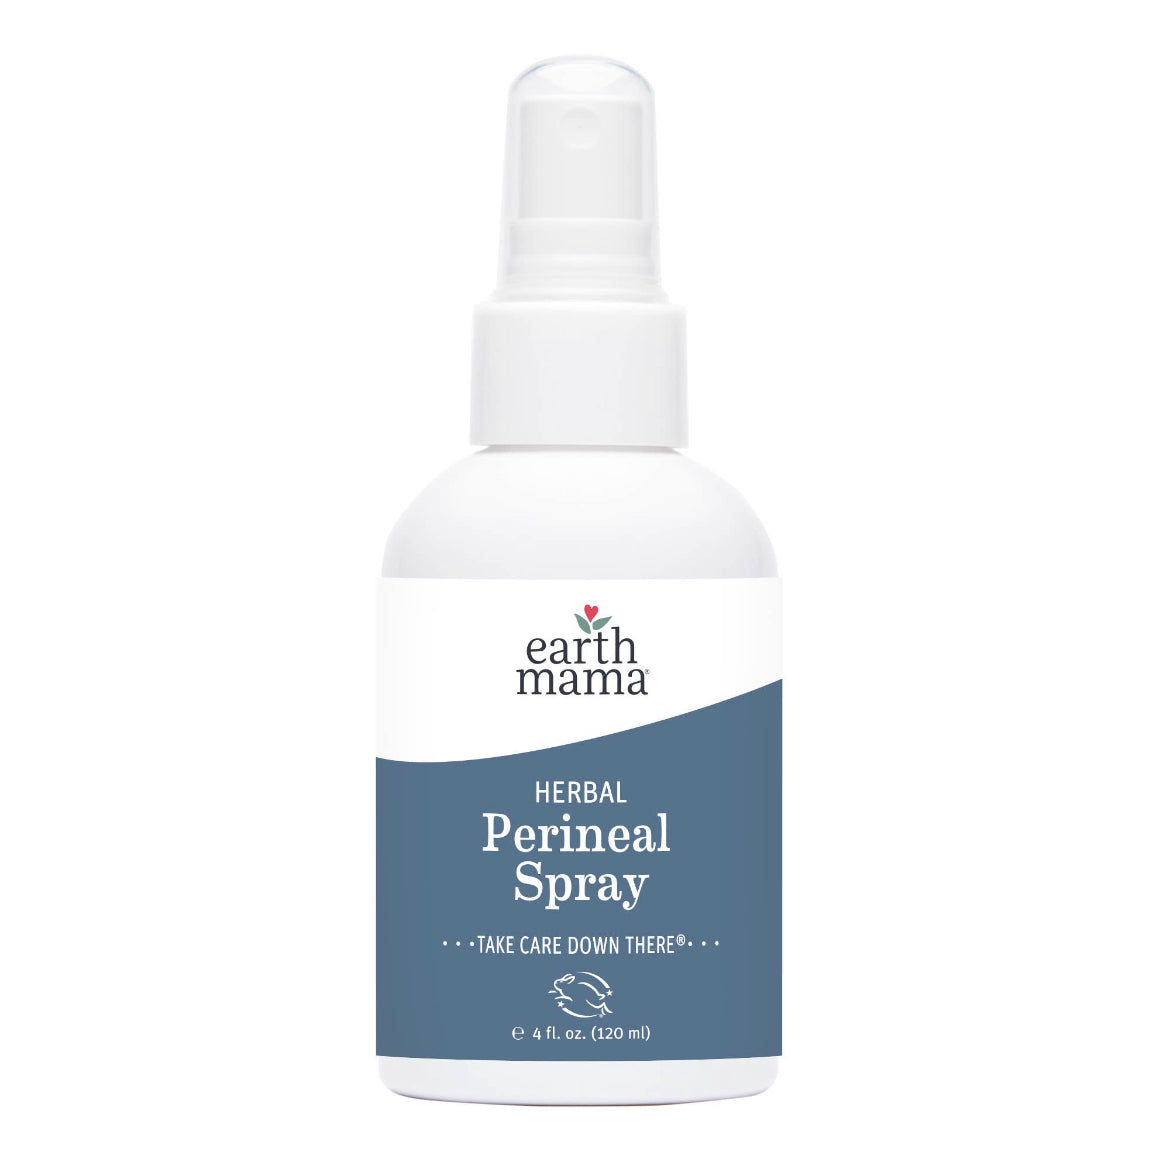 Herbal Perneal Spray